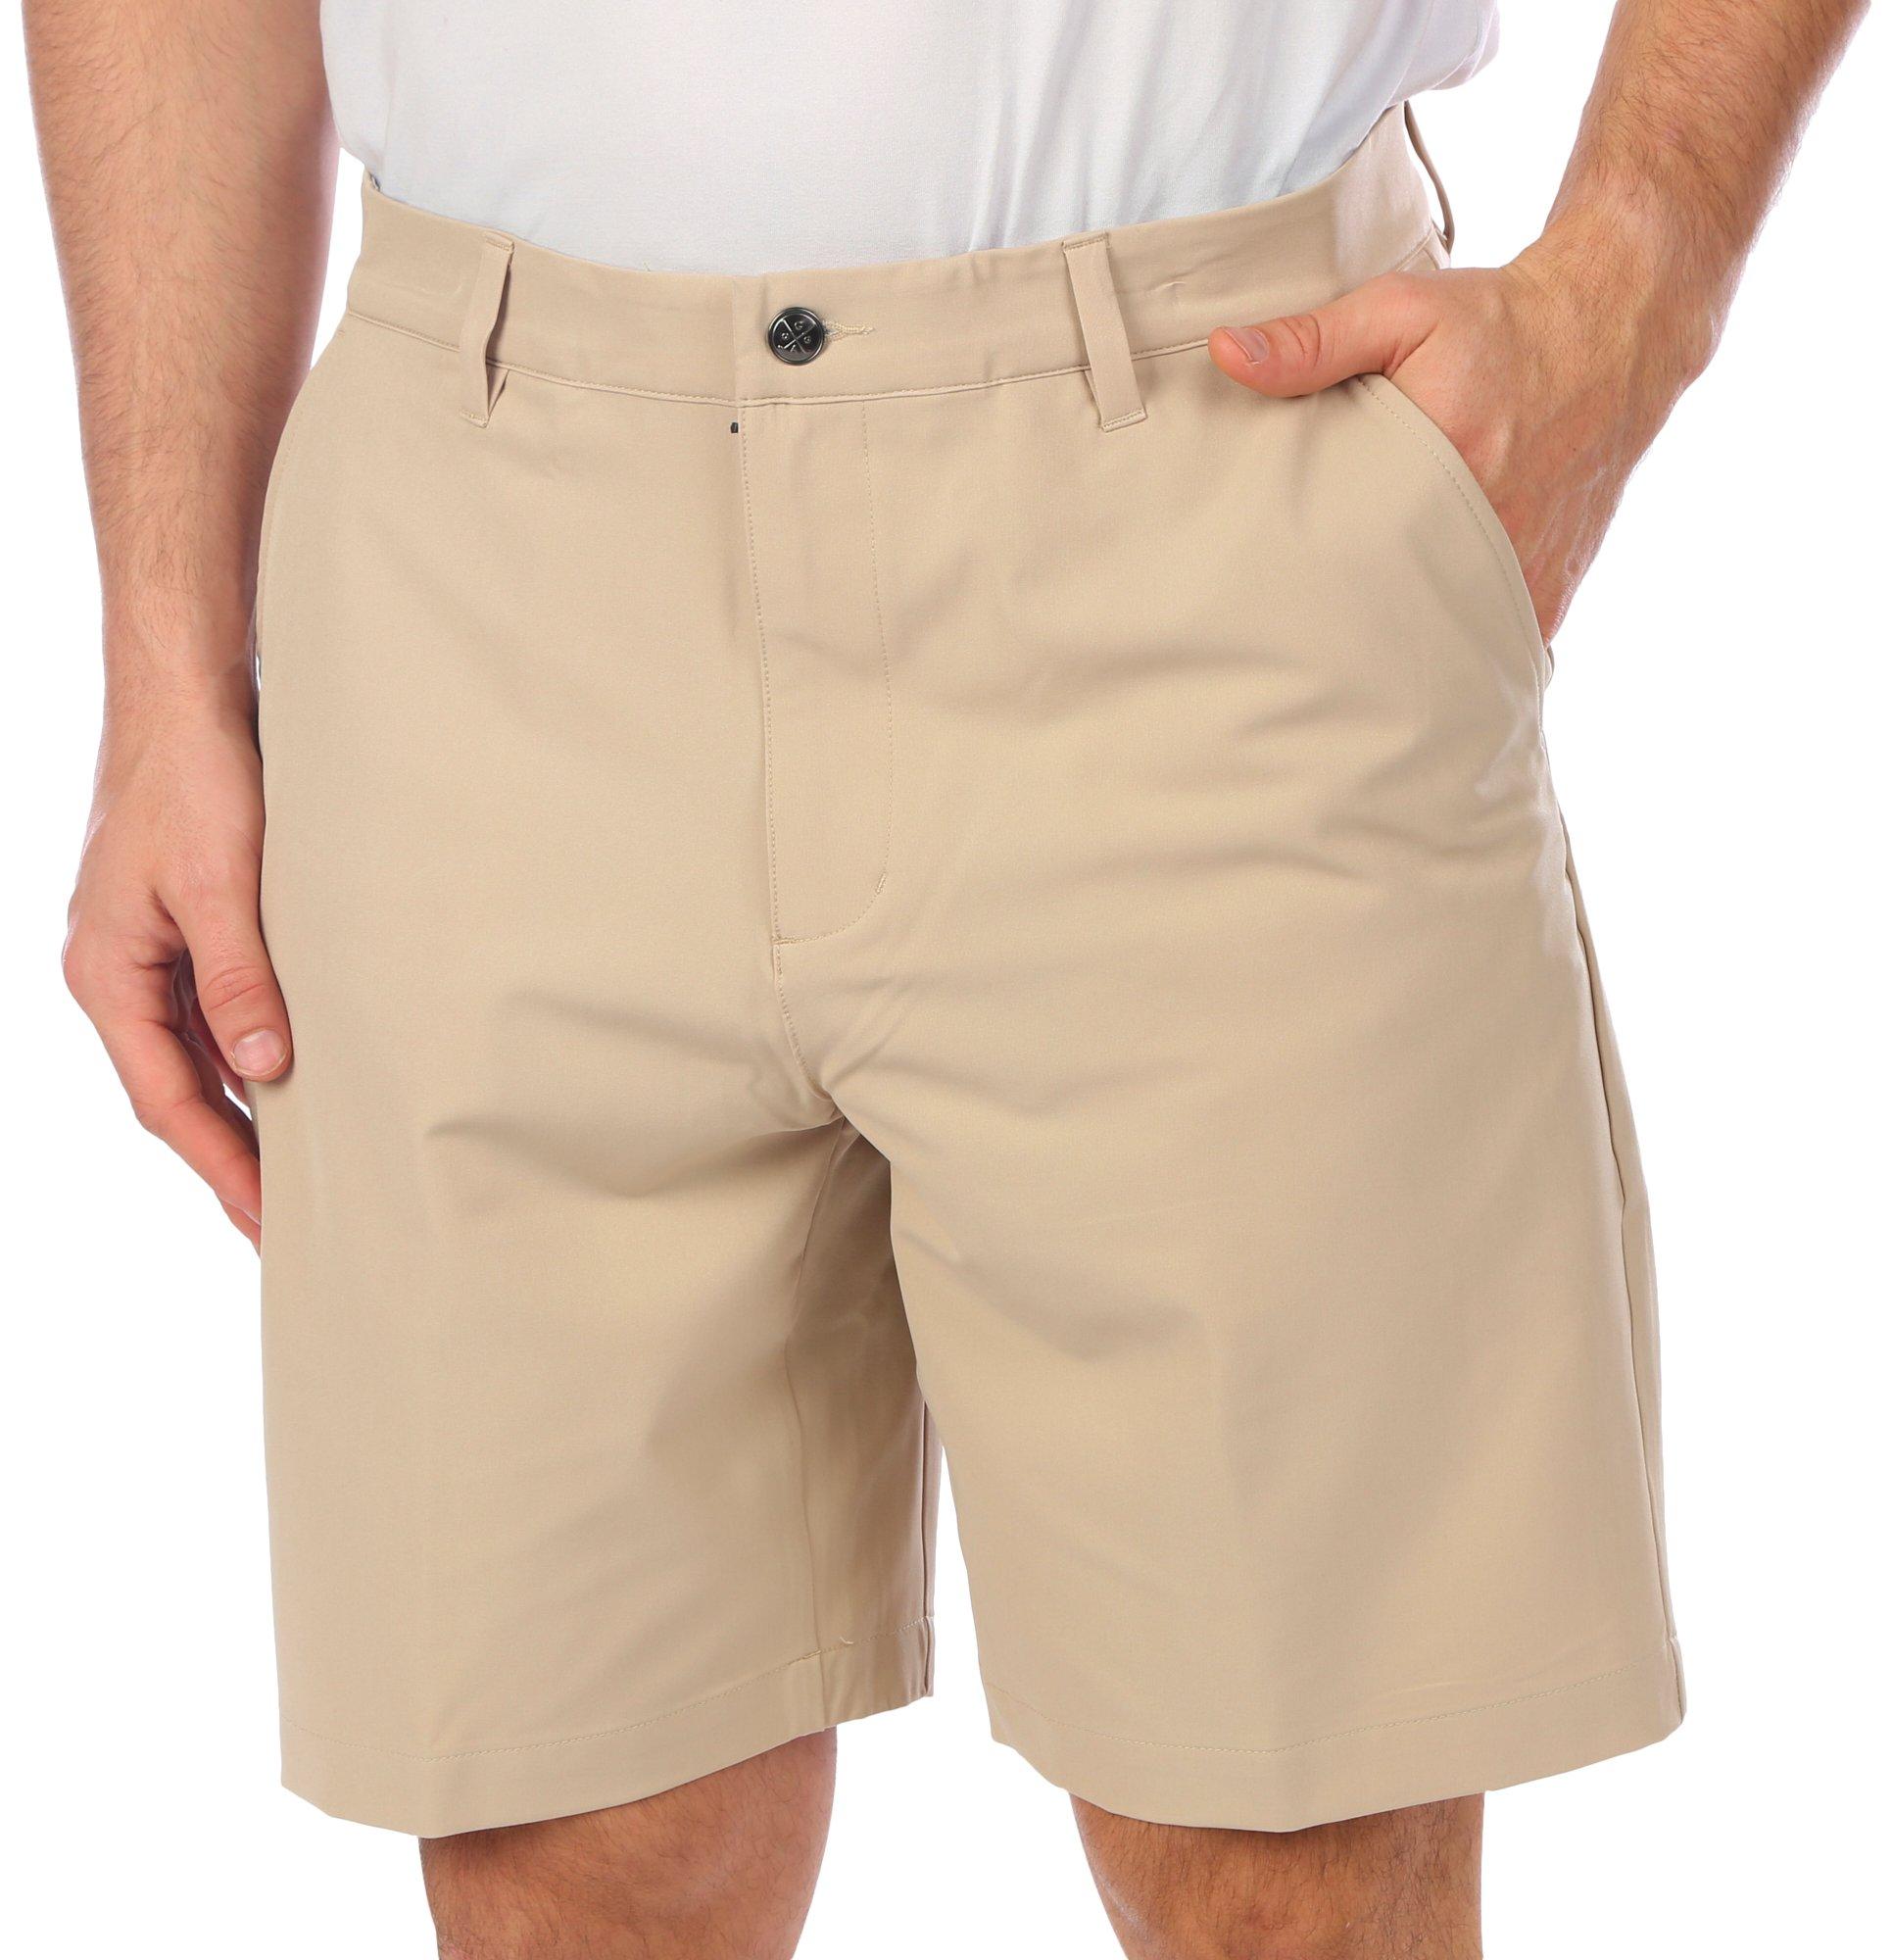 Golf America Mens Solid 4-Way Stretch Golf Shorts